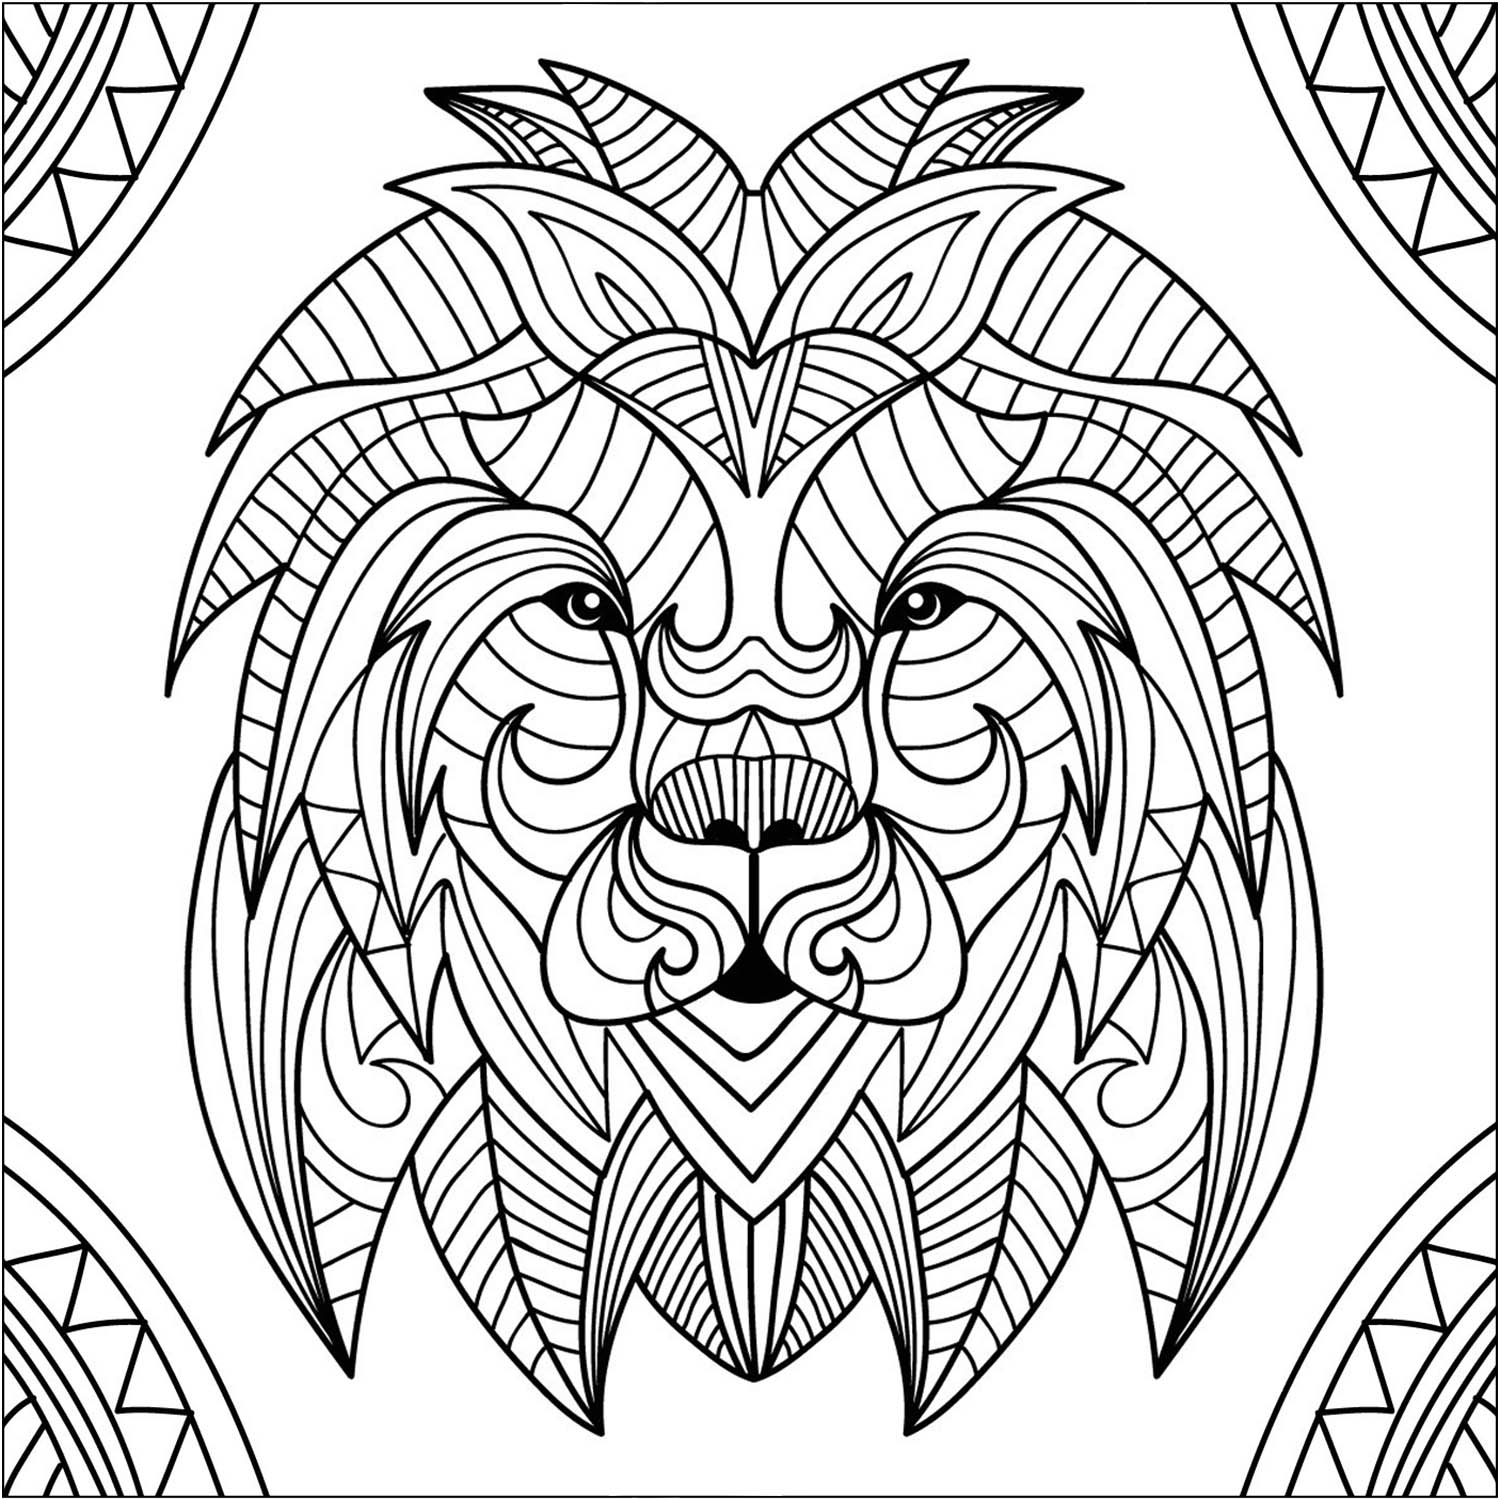 Une jolie tête de lion dans le style mandala, avec le fond